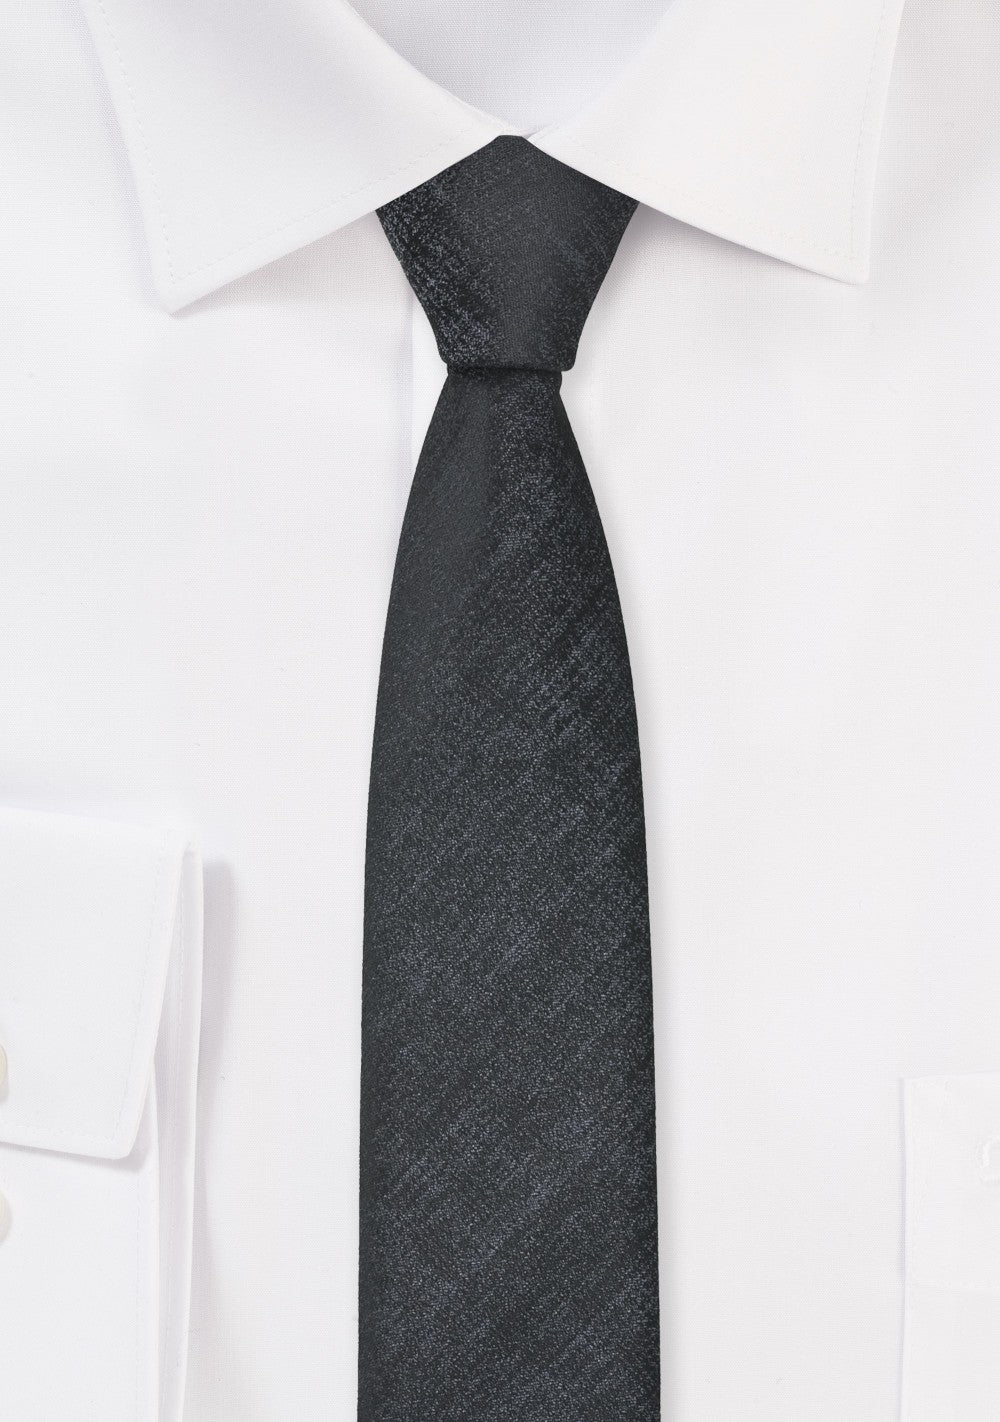 Cravata simpla neagra 6cm, Uber, negru carbune